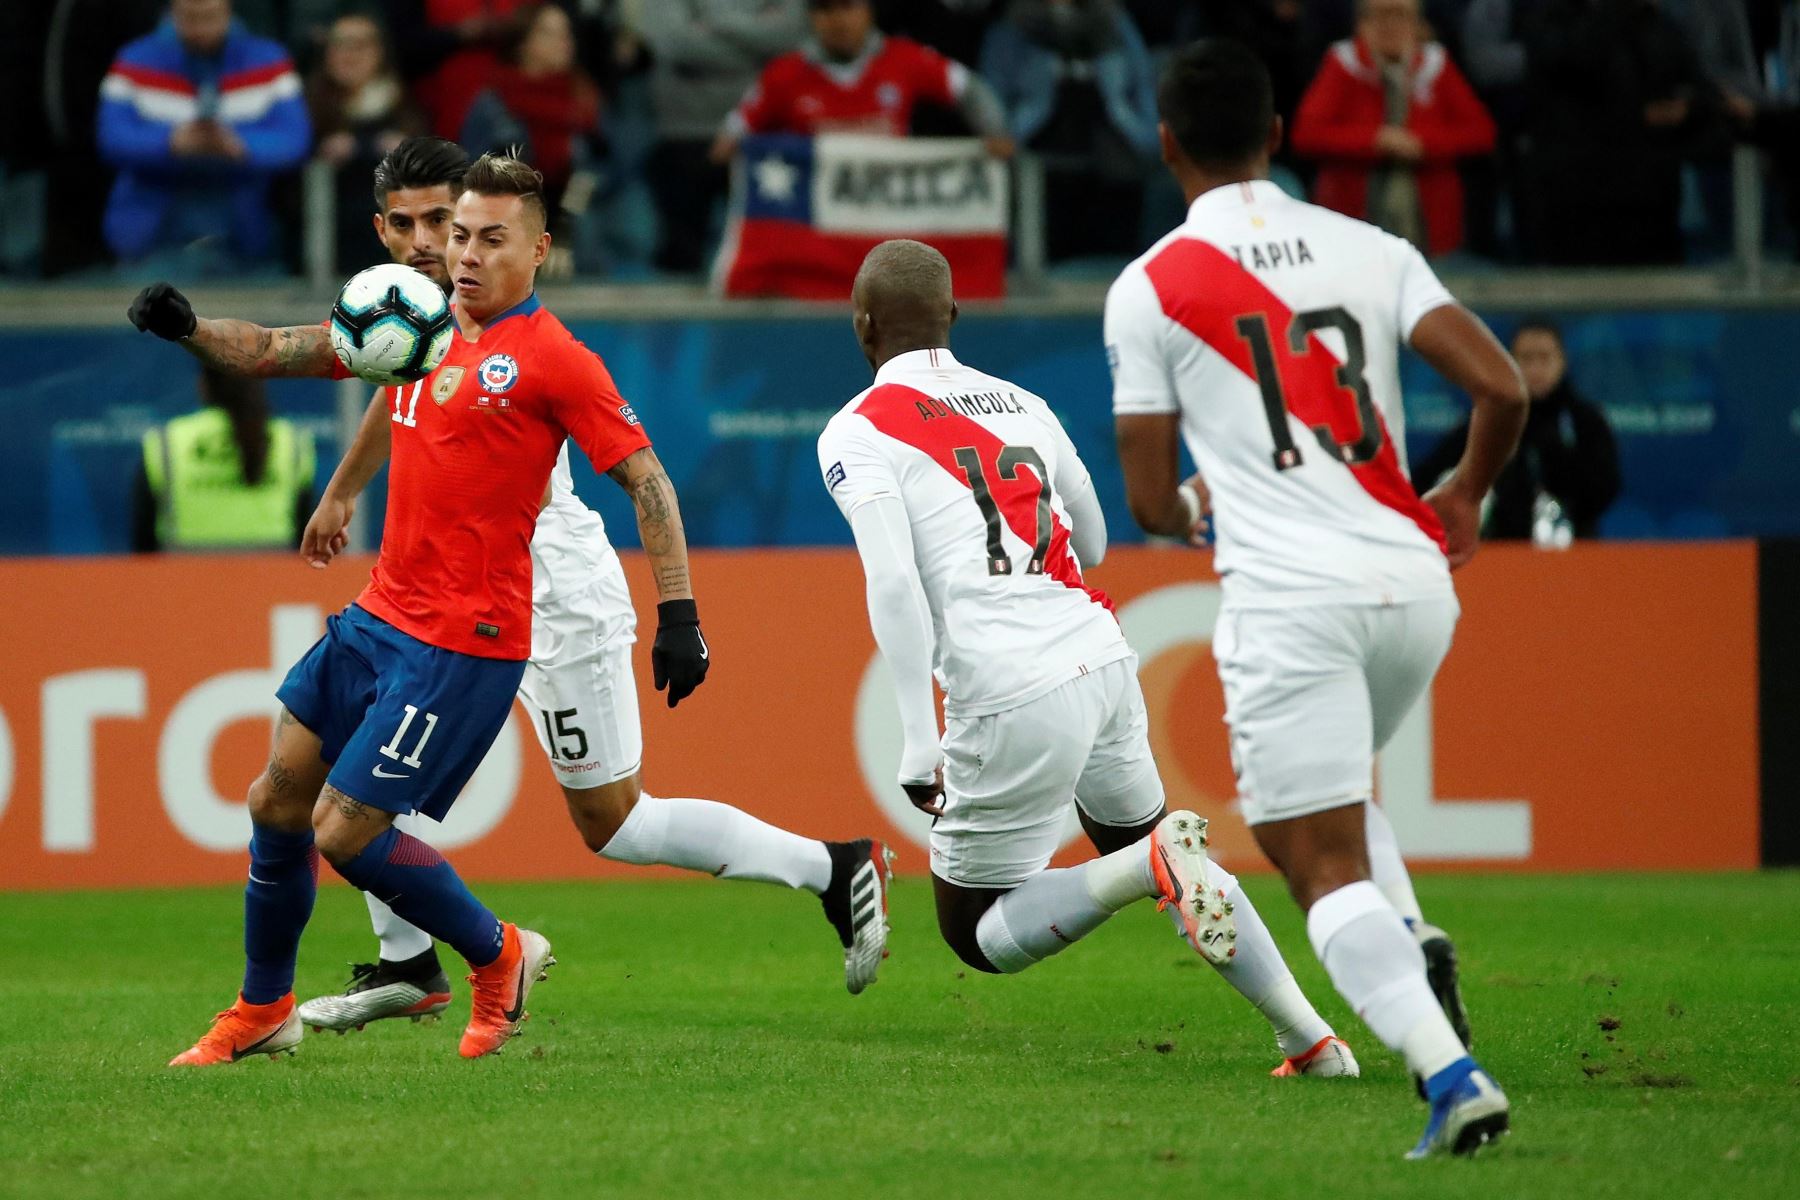 El jugador de Chile Eduardo Vargas (i) disputa el balón con Luis Advíncula (2-d) de Perú, durante el partido Chile-Perú de semifinales de la Copa América de Fútbol 2019, en el Estadio Arena do Grêmio de Porto.
Foto: AFP